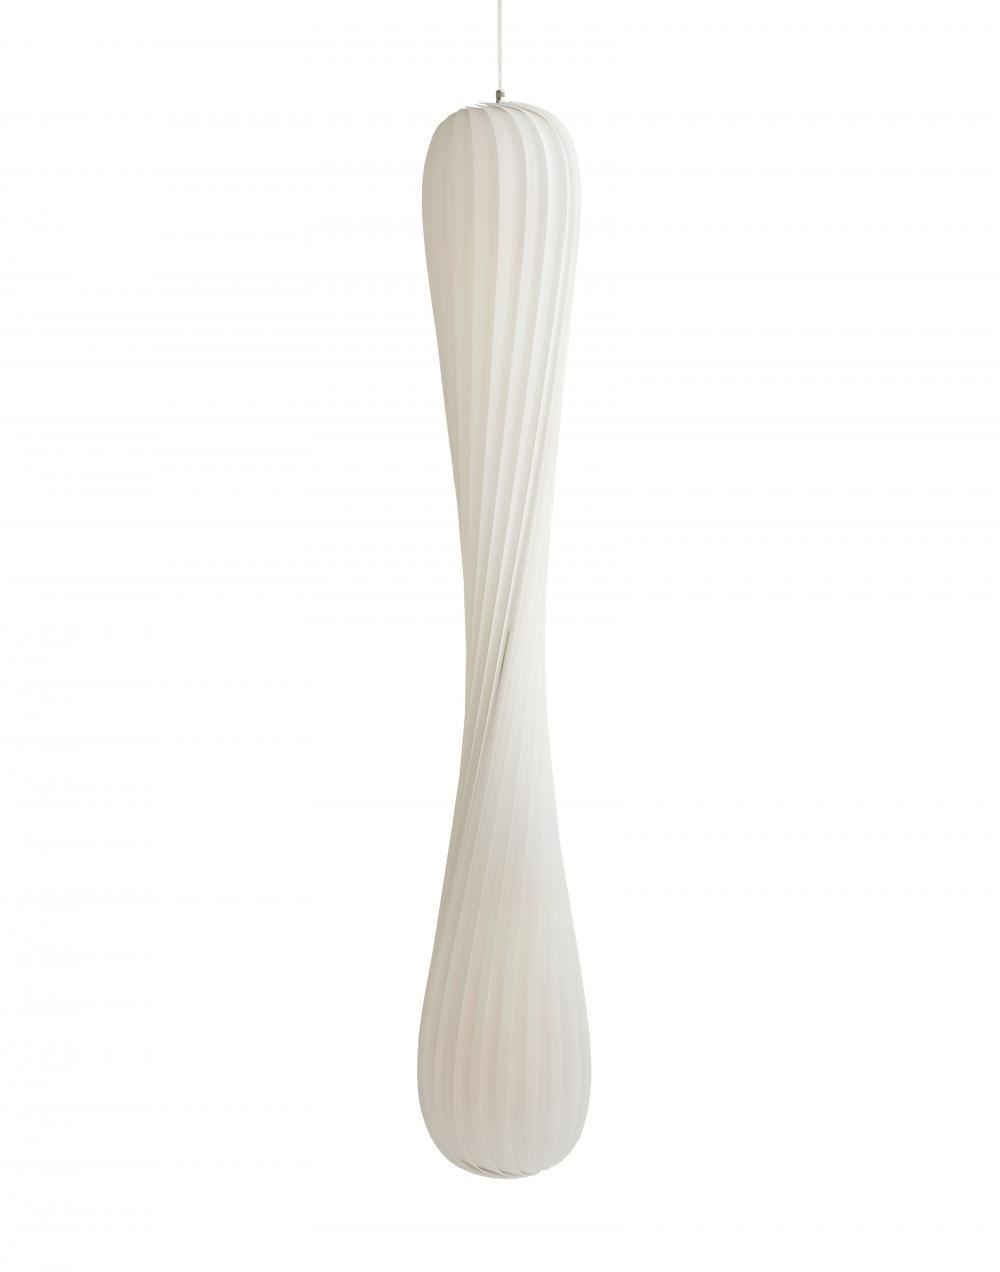 Tom Rossau Tr7 Pendant White Plastic Medium Designer Pendant Lighting